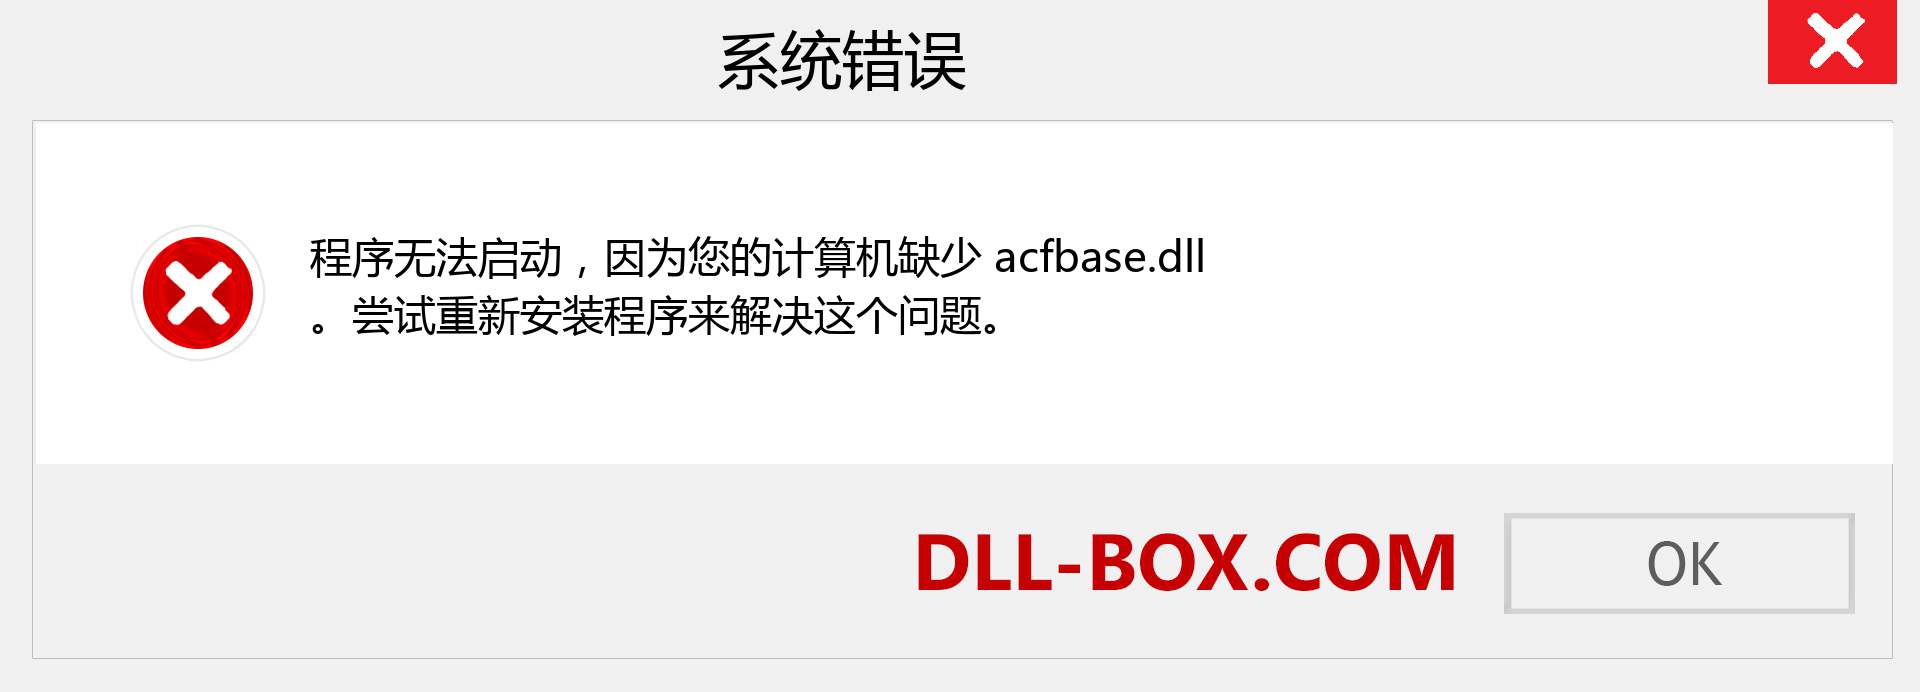 acfbase.dll 文件丢失？。 适用于 Windows 7、8、10 的下载 - 修复 Windows、照片、图像上的 acfbase dll 丢失错误